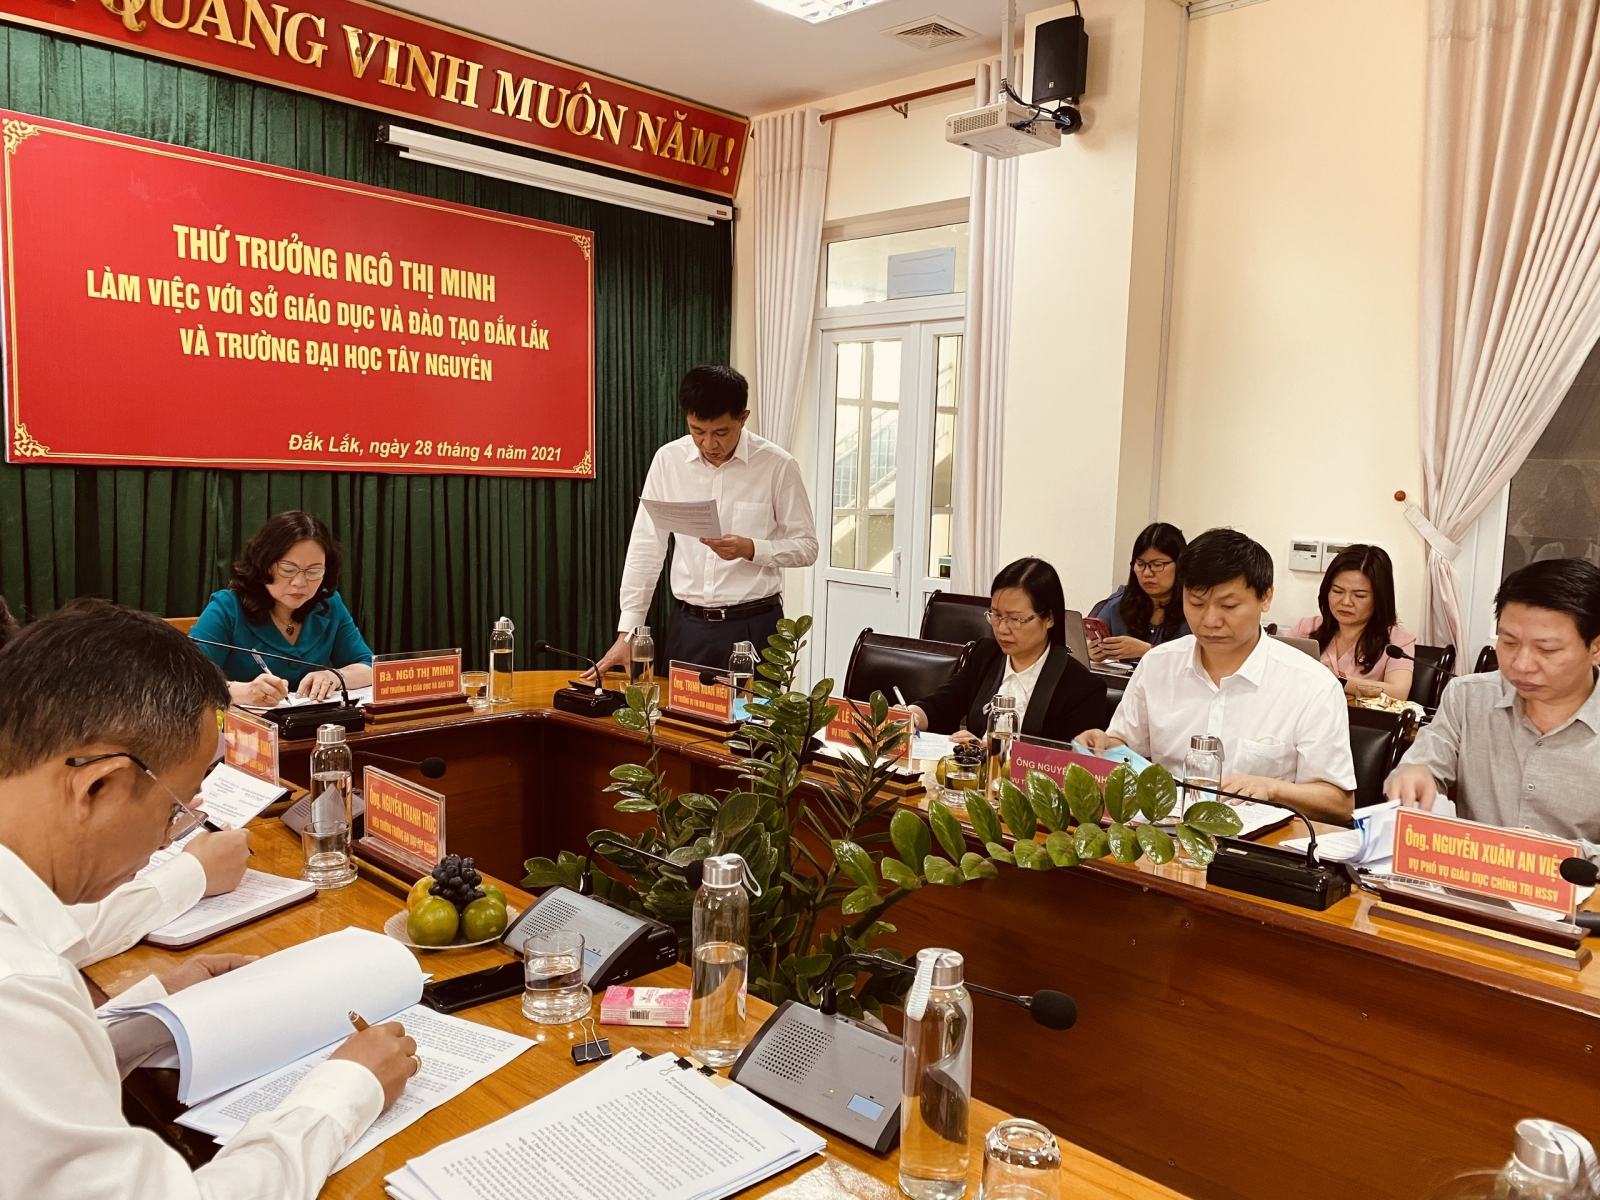 Thứ trưởng Ngô Thị Minh: Sáp nhập trường, lớp tại Đắk Lắk sáng tạo và nhân văn